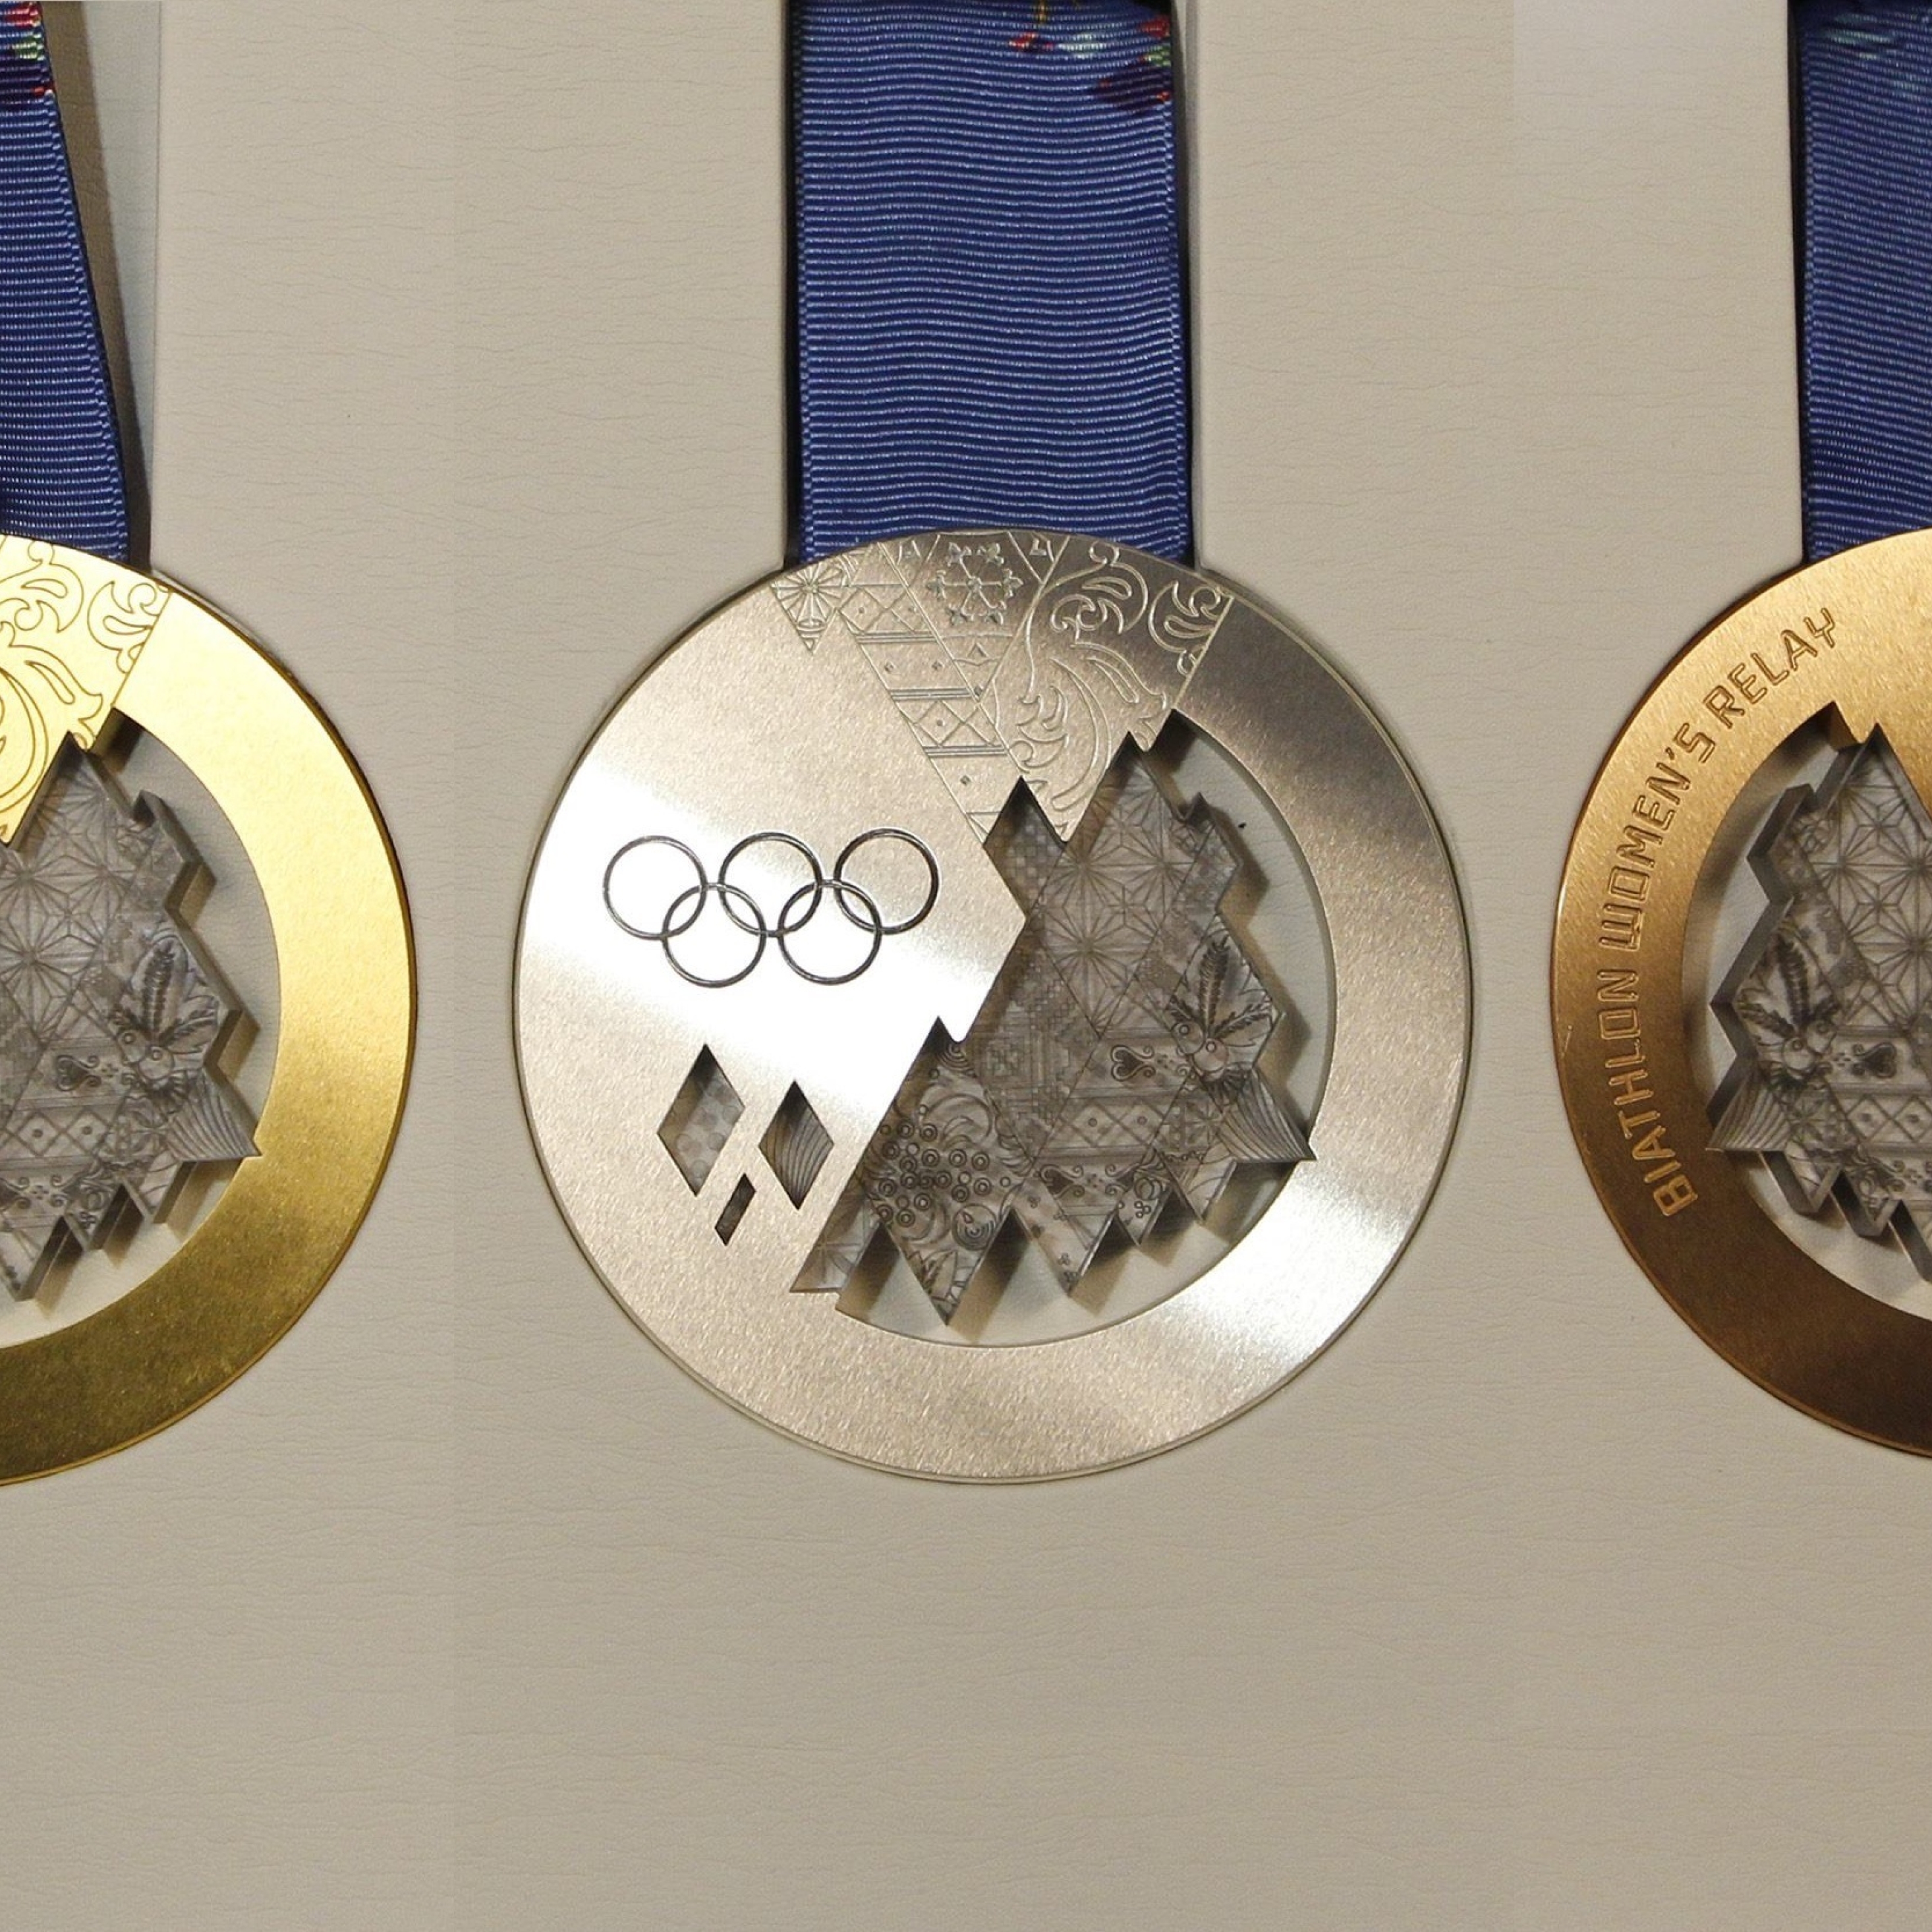 Медаль золото серебро. Олимпийские медали Сочи 2014. Медали олимпиады 2014 Сочи. Krieghoff k-80 Олимпийские медали. Олимпийские медали золото серебро бронза.